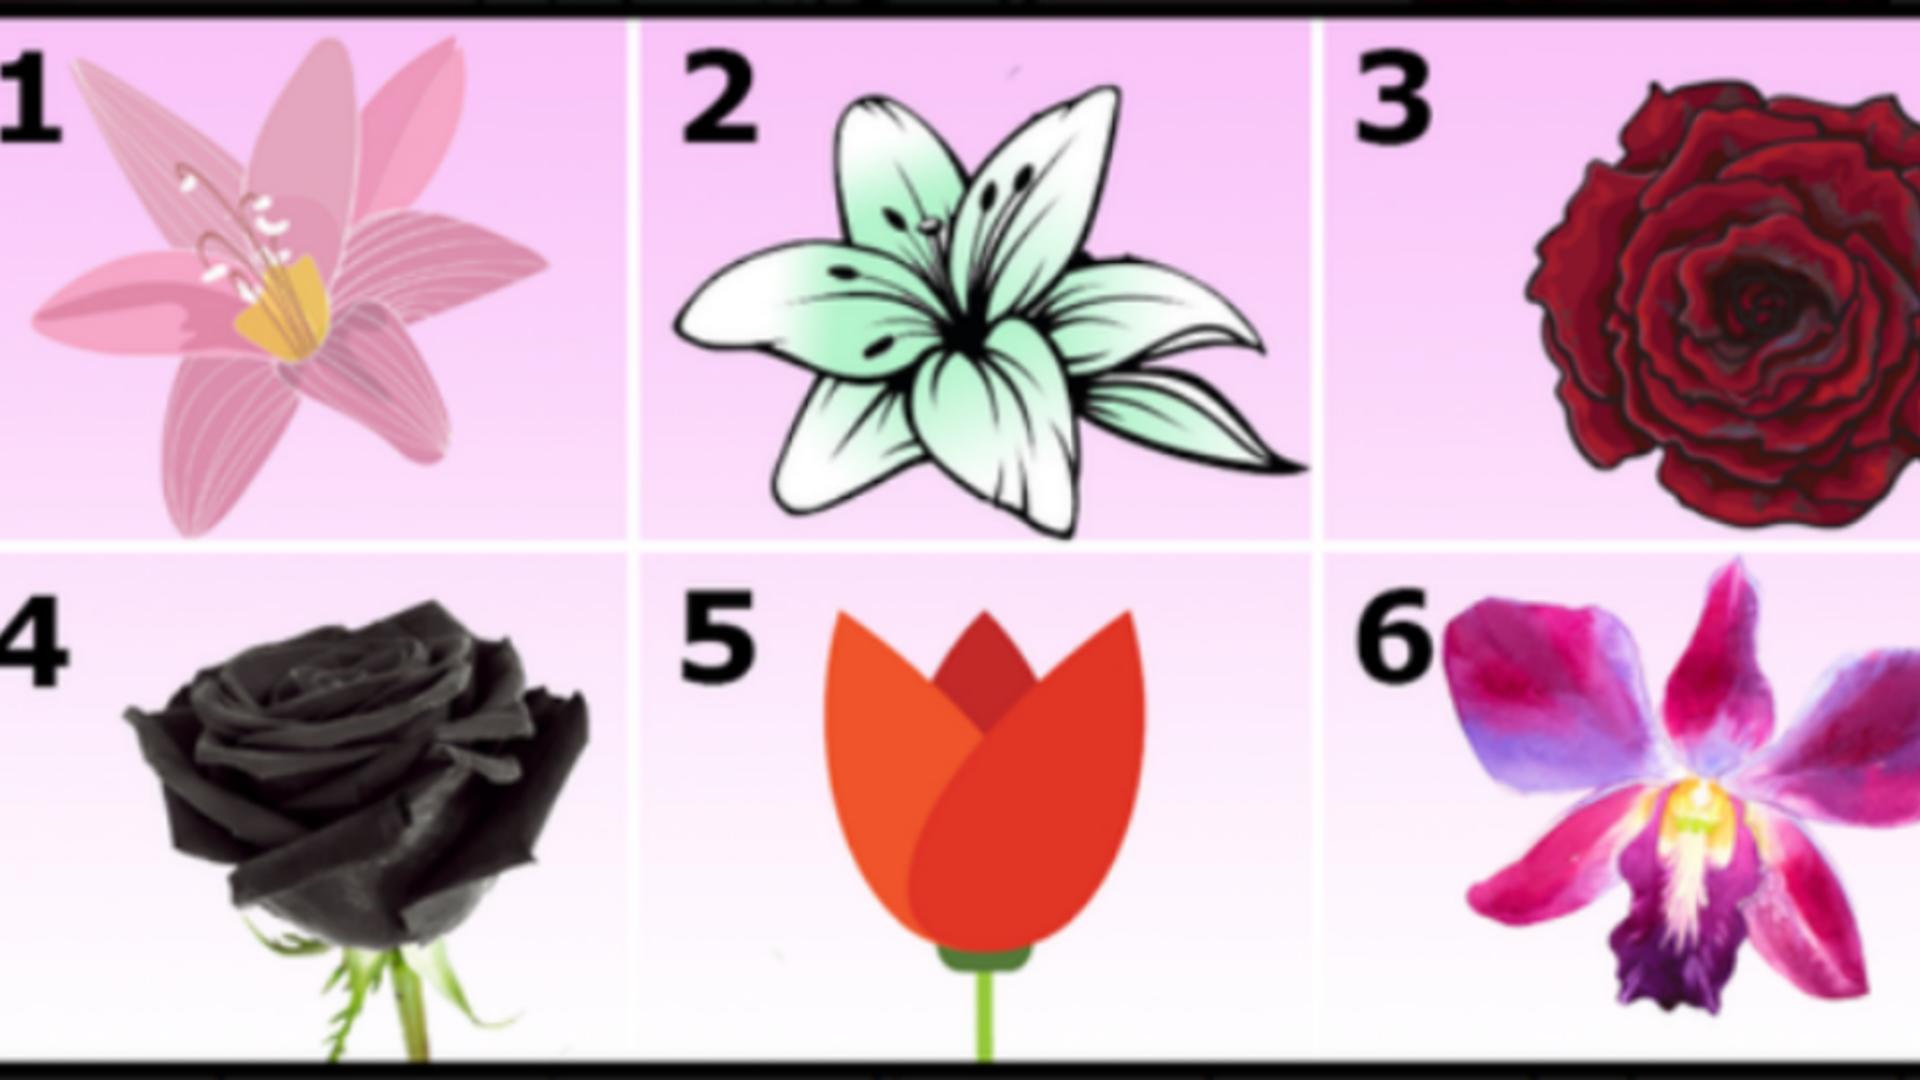 Fă-ți acest test psihologic pentru a te cunoaște mai bine: floarea pe care o alegi trădează adevăruri dureroase. Ai curaj?